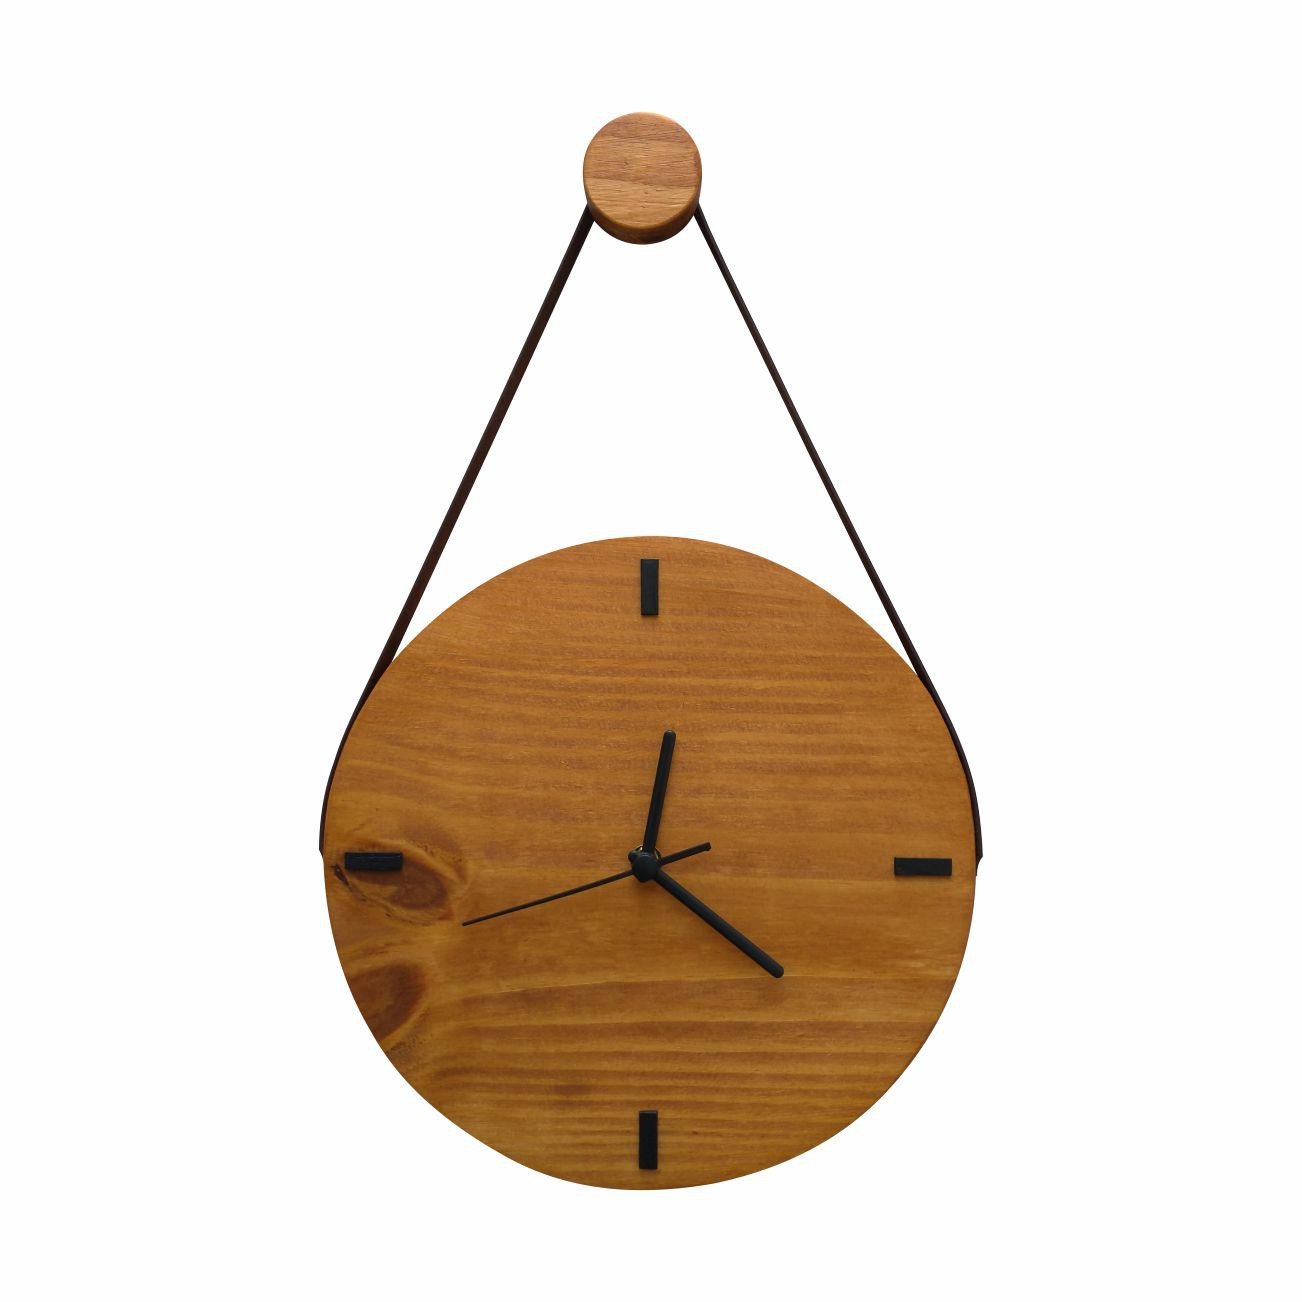 Relógio Decorativo Edward Clock Rústico com Alça - 1